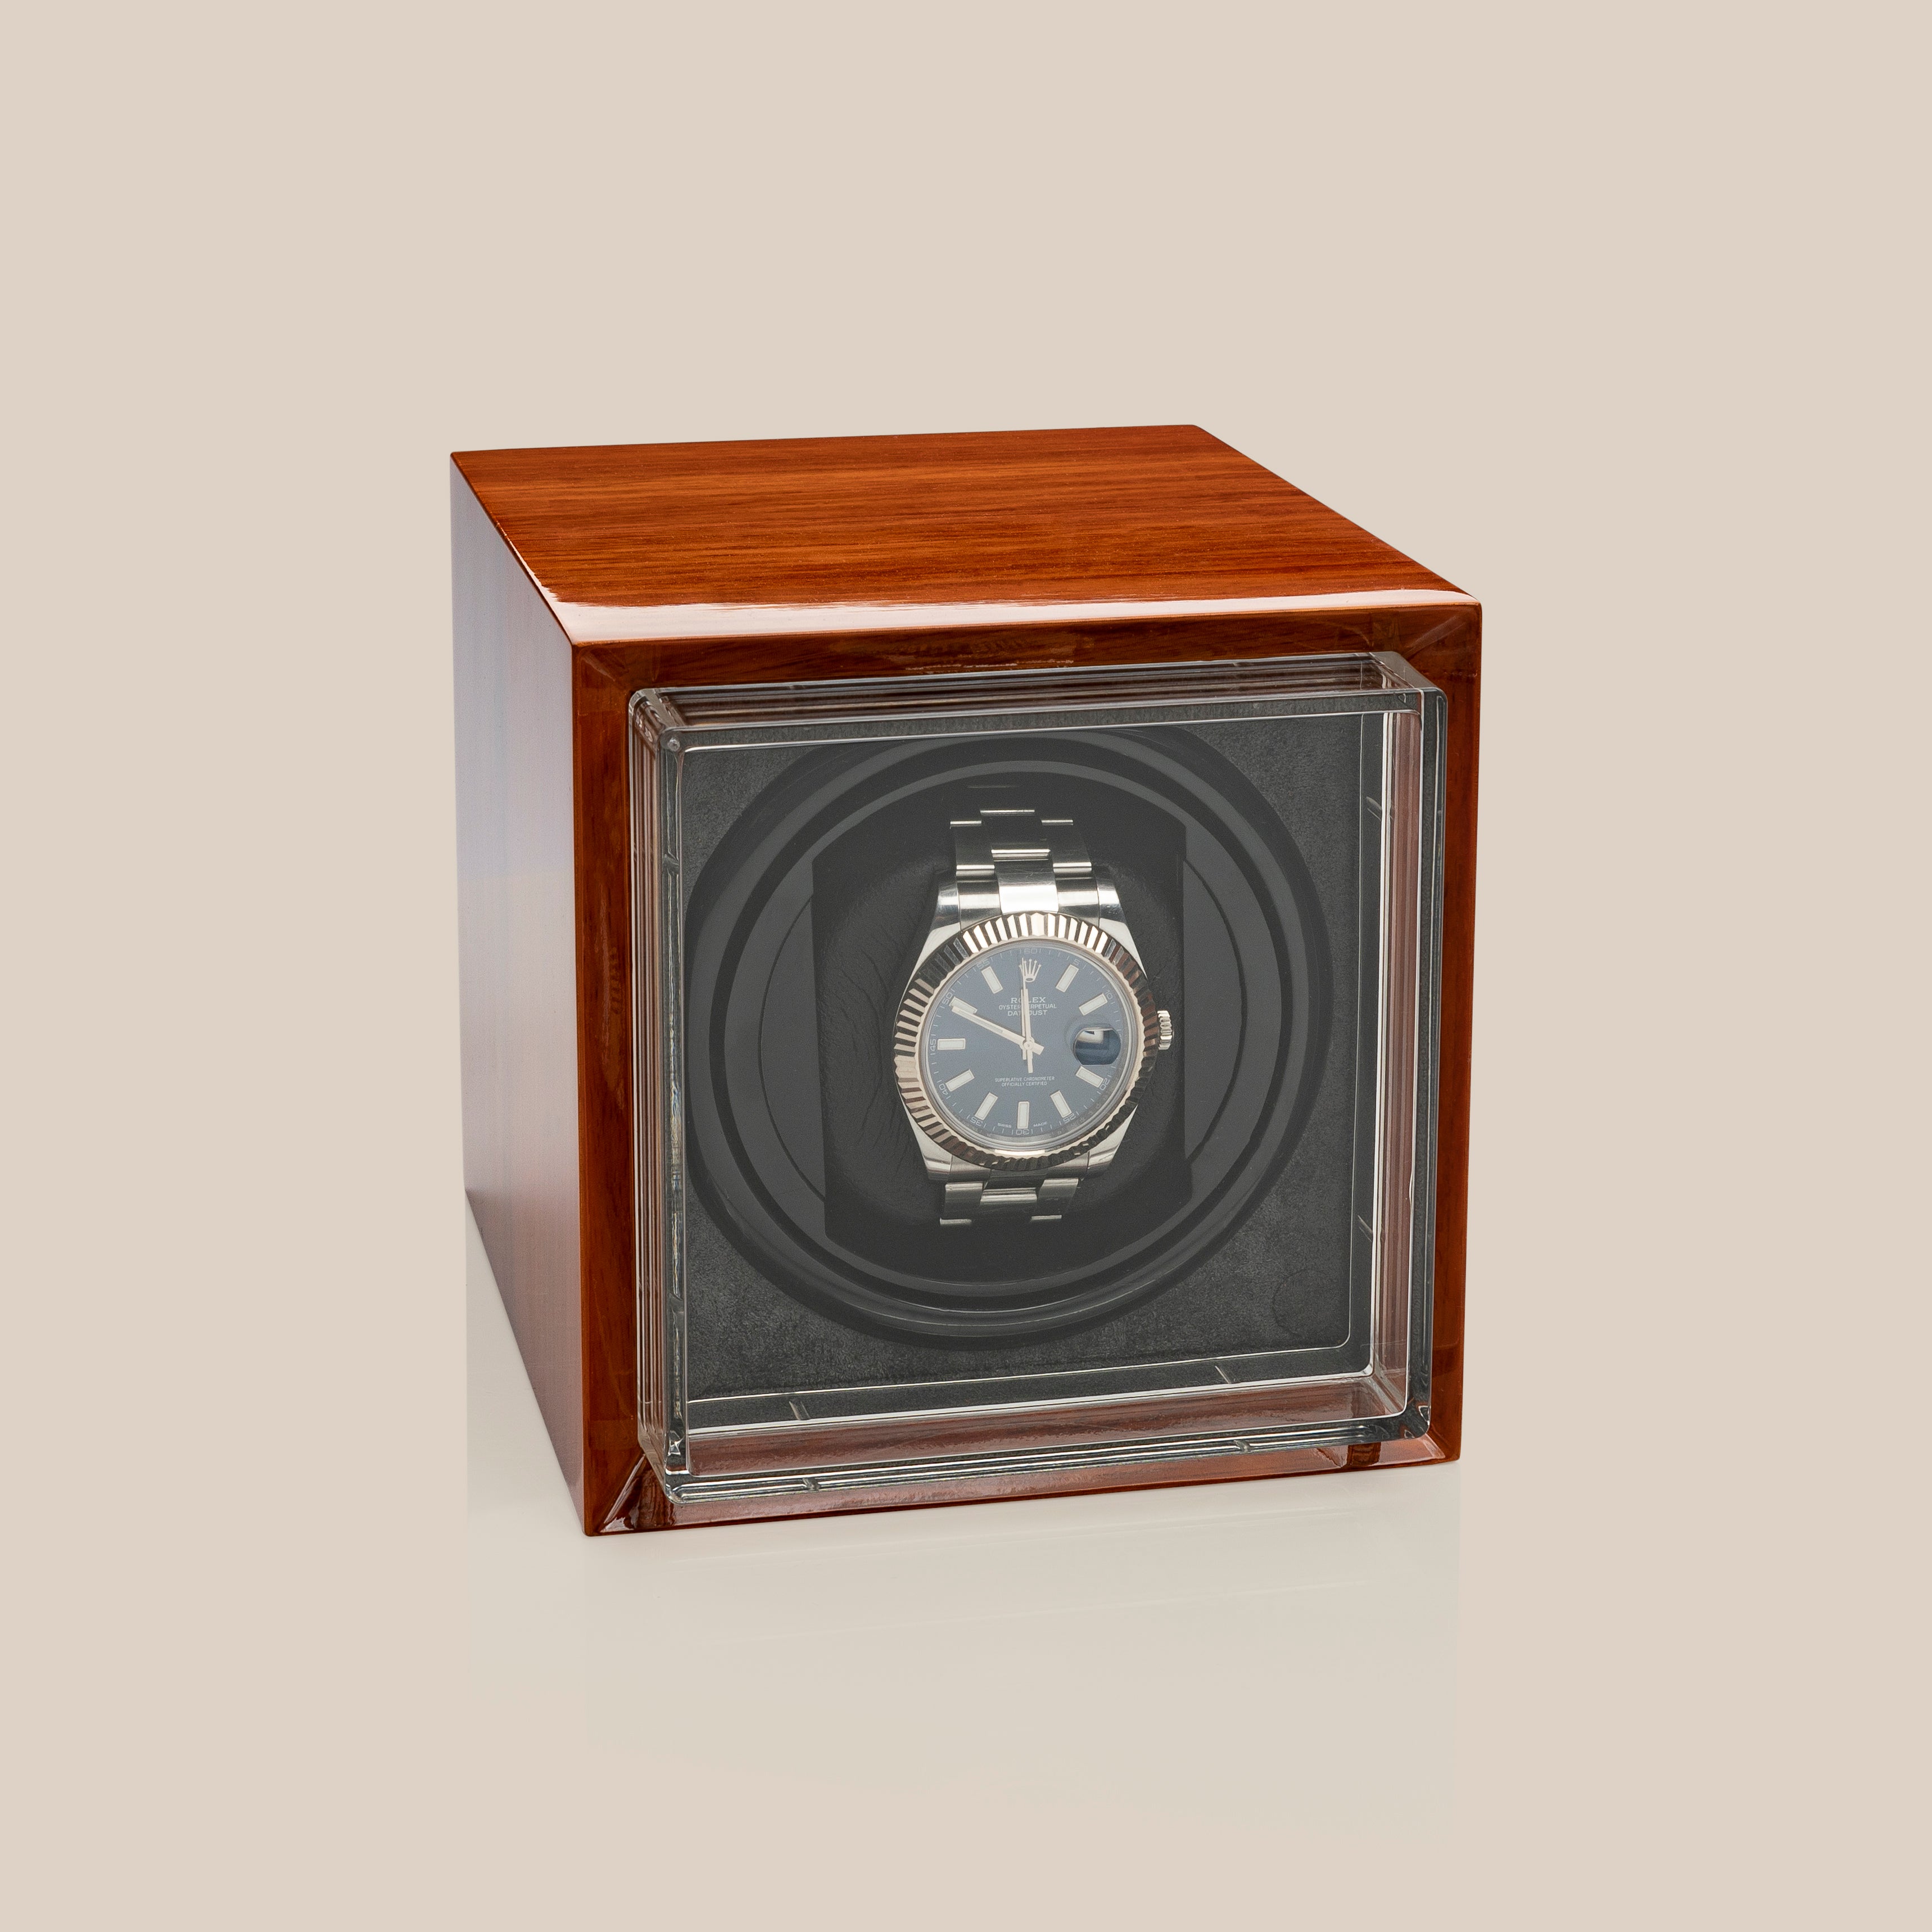 Vitrina móvil WW67 - 1 reloj